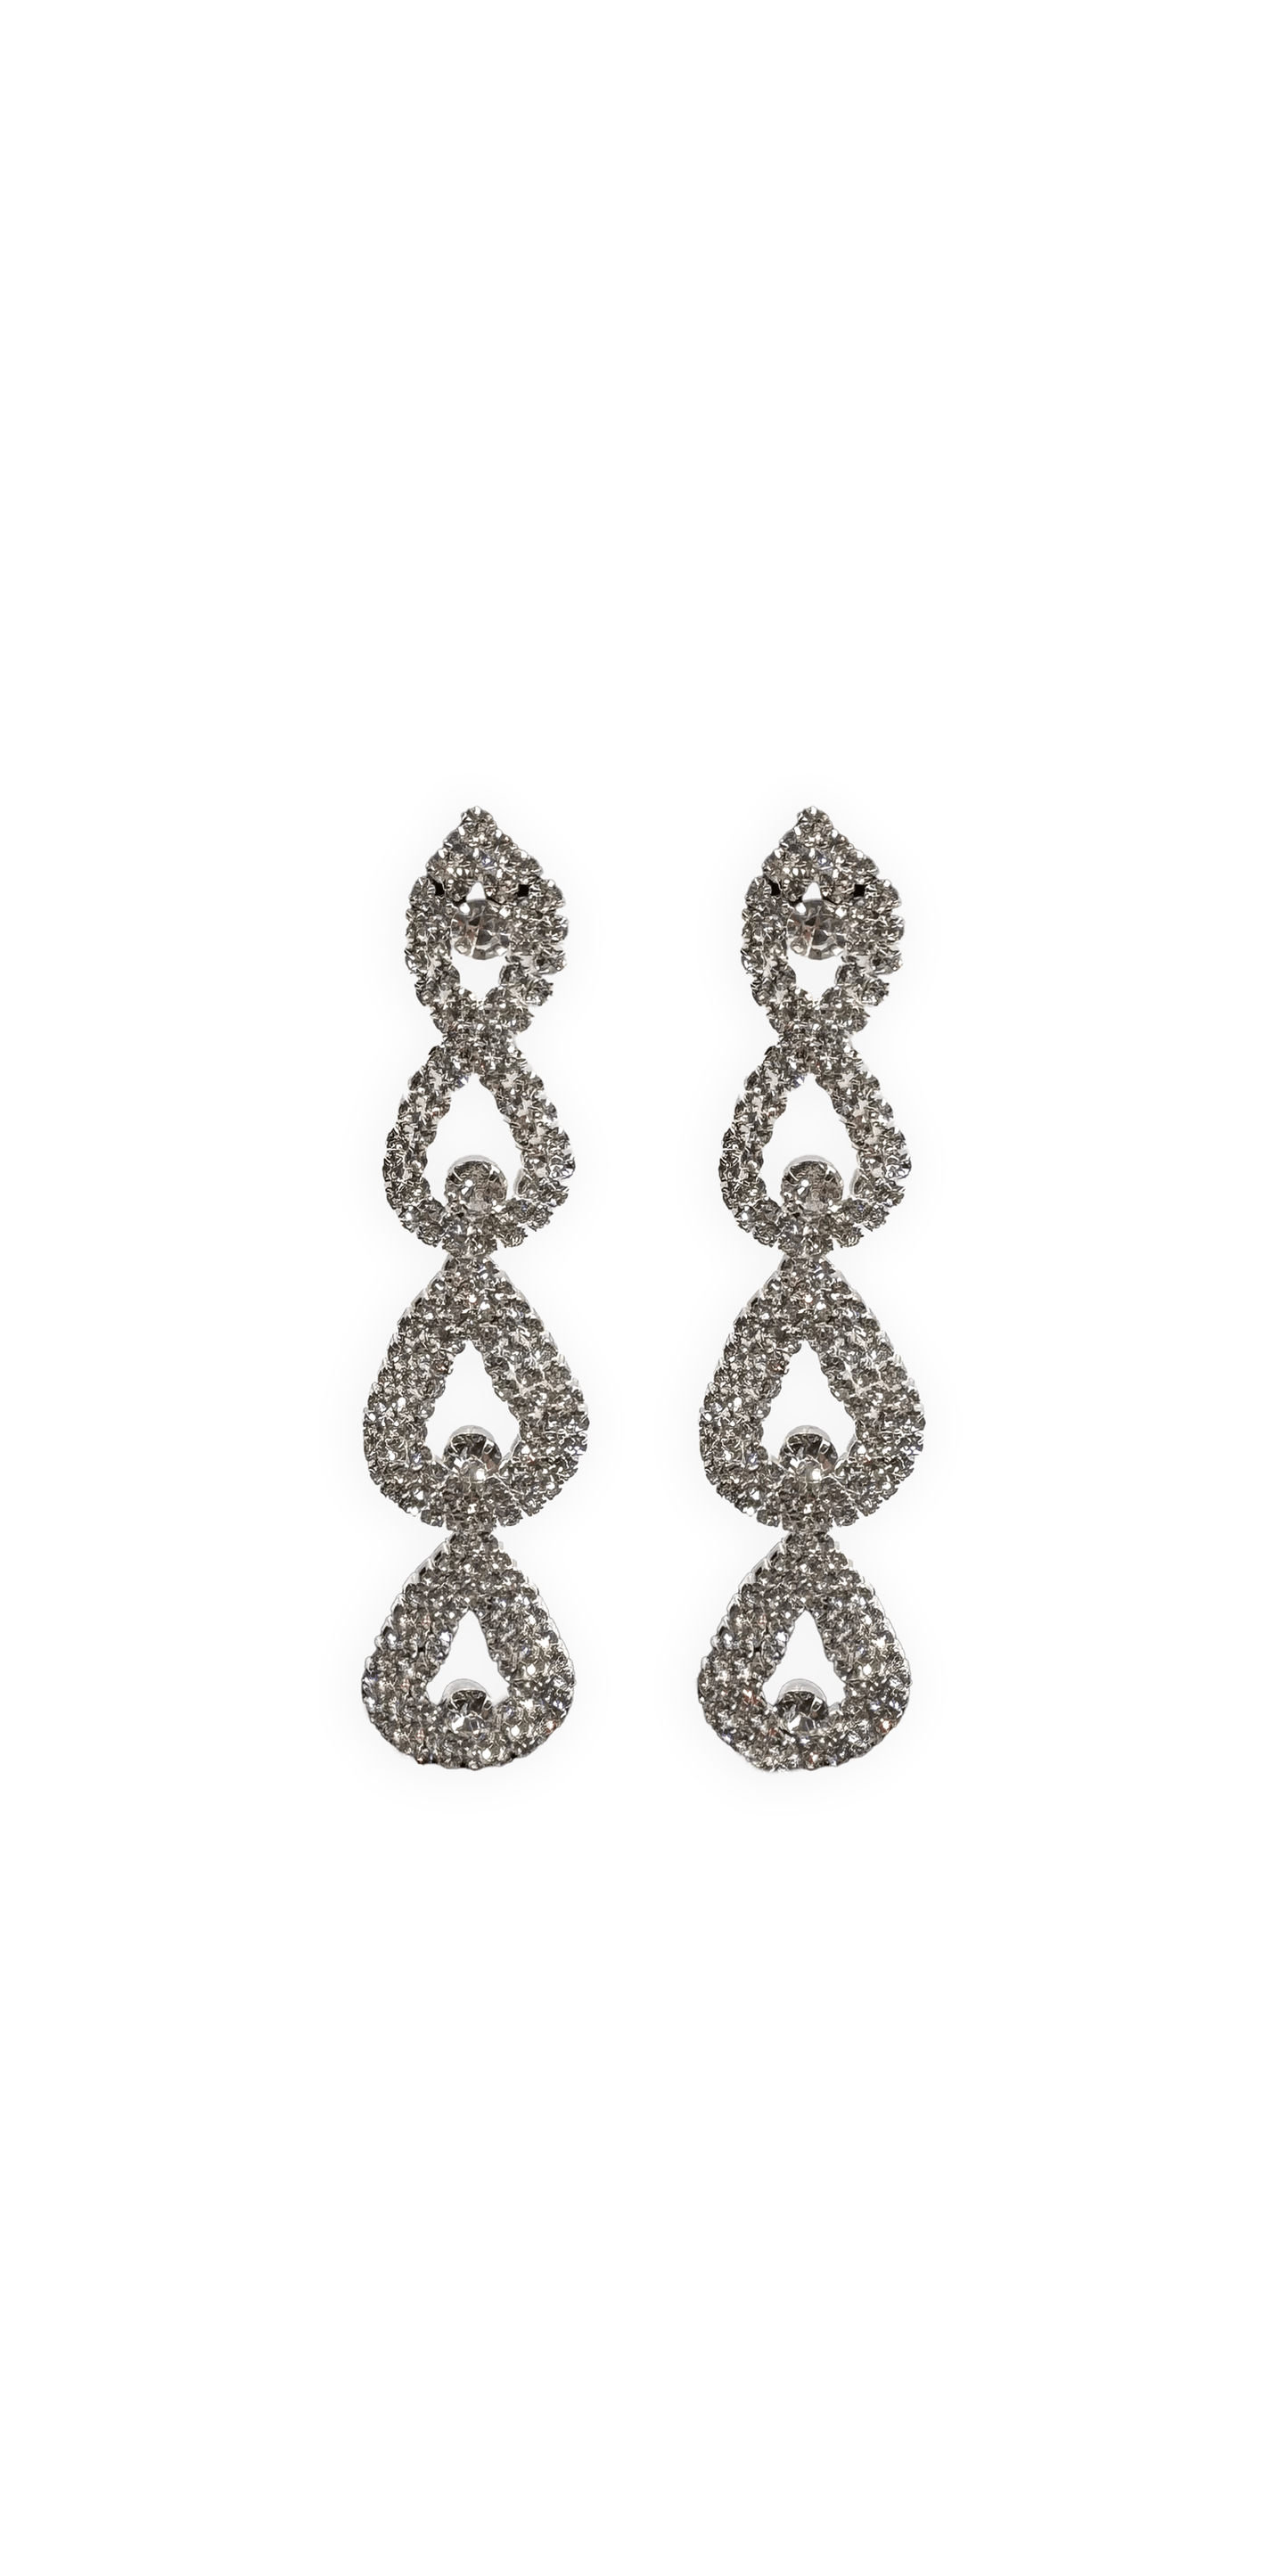 Camille La Vie Rhinestone Multi Drop Earrings one-size / silver